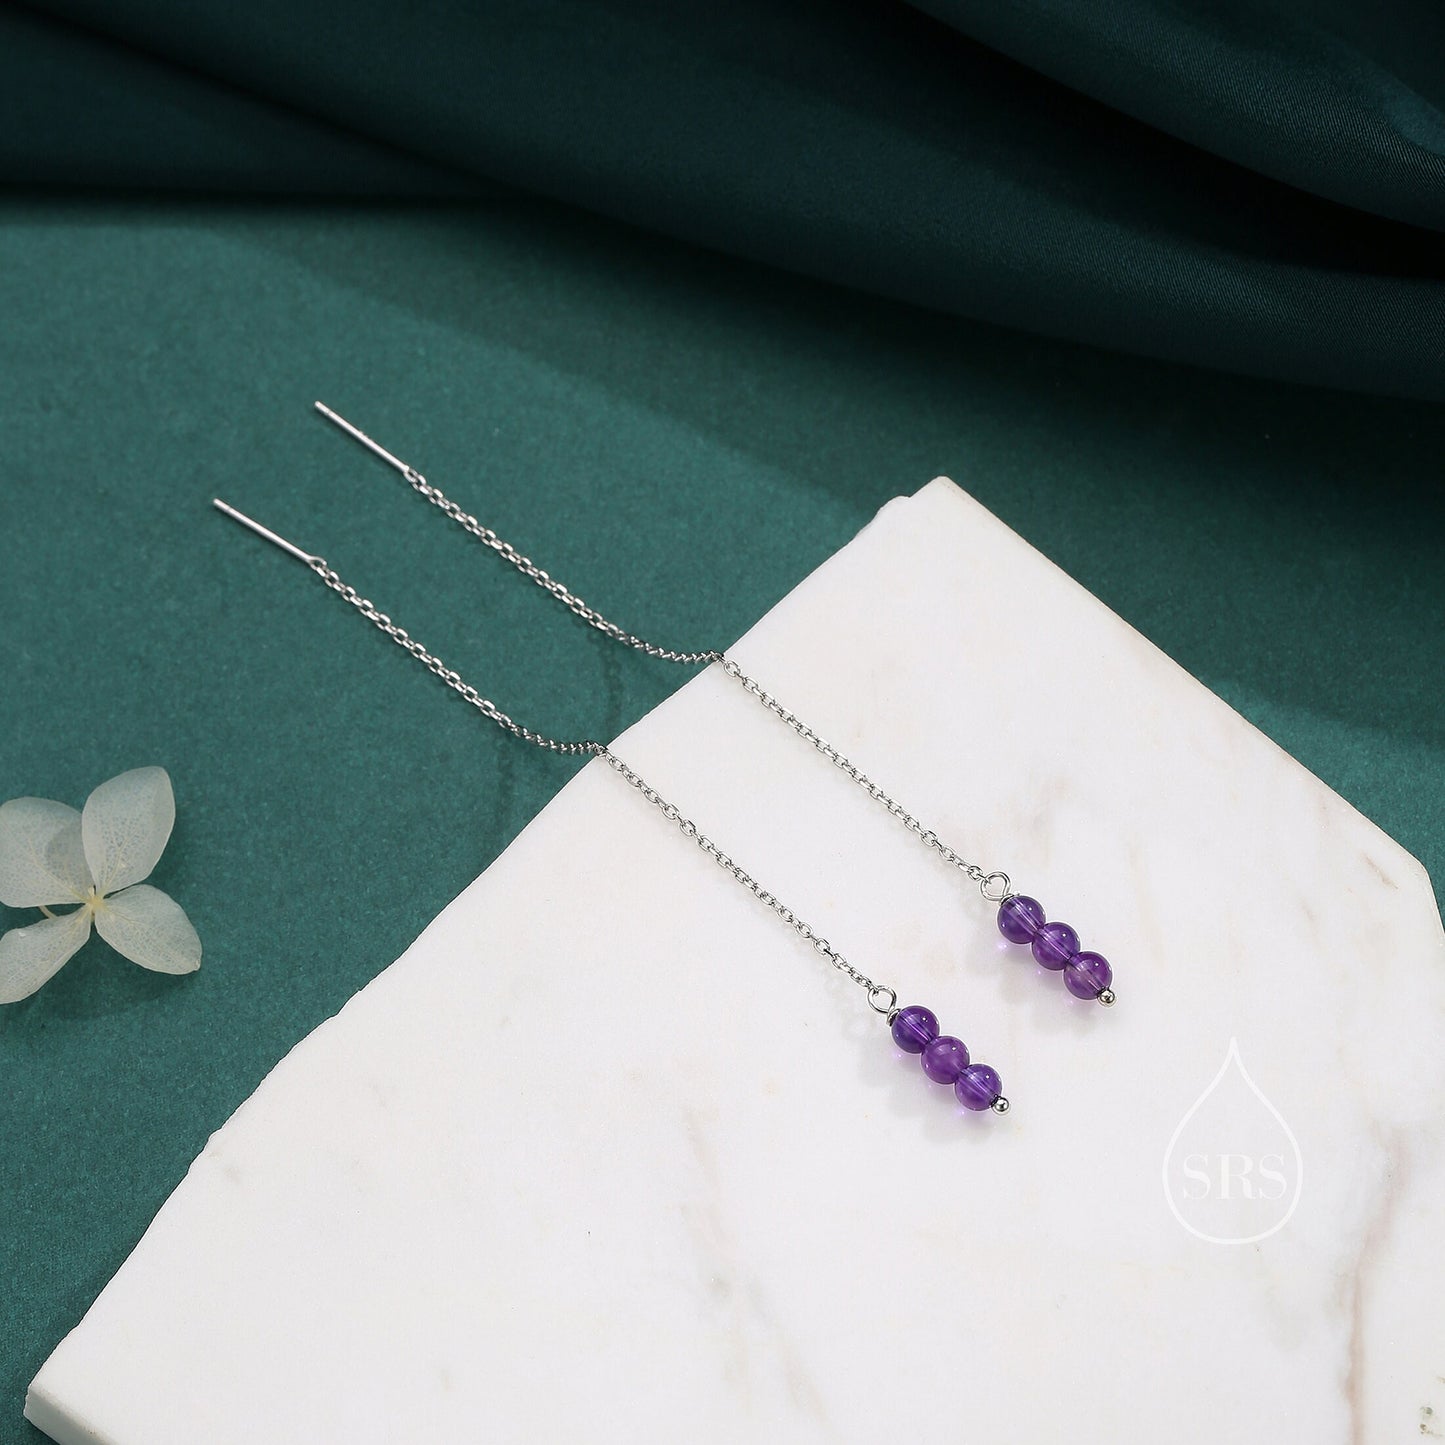 Genuine Amethyst Gemstone Ear Threaders in Sterling Silver, Three Beads Threader Earrings, Ear Jacket, Purple Amethyst Crystal Earrings